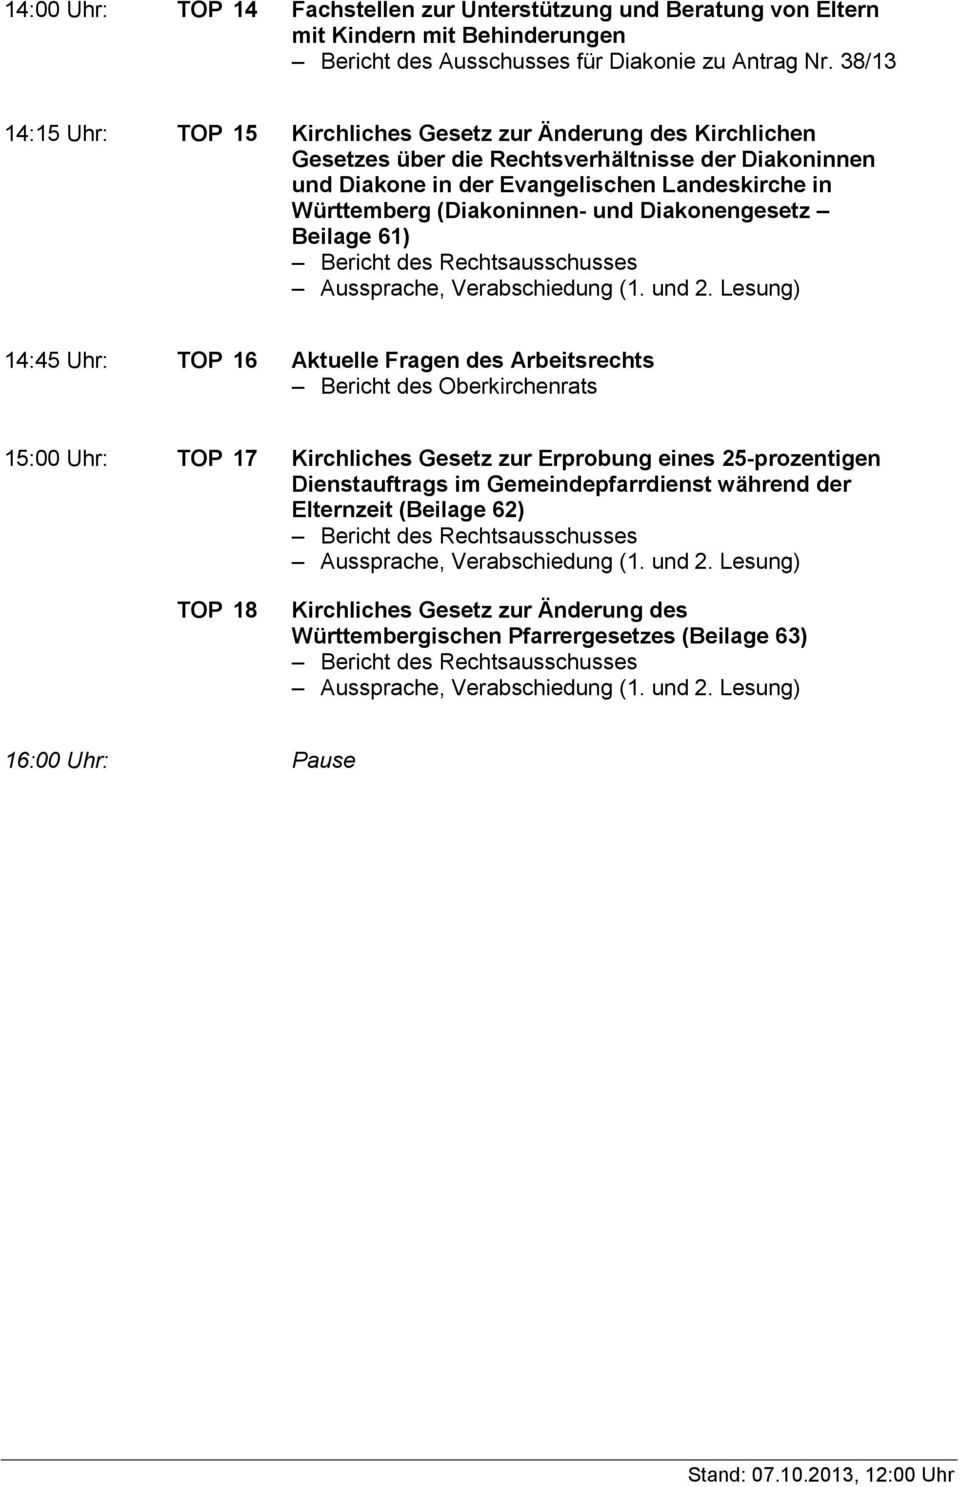 in Württemberg (Diakoninnen- und Diakonengesetz Beilage 61) 14:45 Uhr: TOP 16 Aktuelle Fragen des Arbeitsrechts 15:00 Uhr: TOP 17 Kirchliches Gesetz zur Erprobung eines